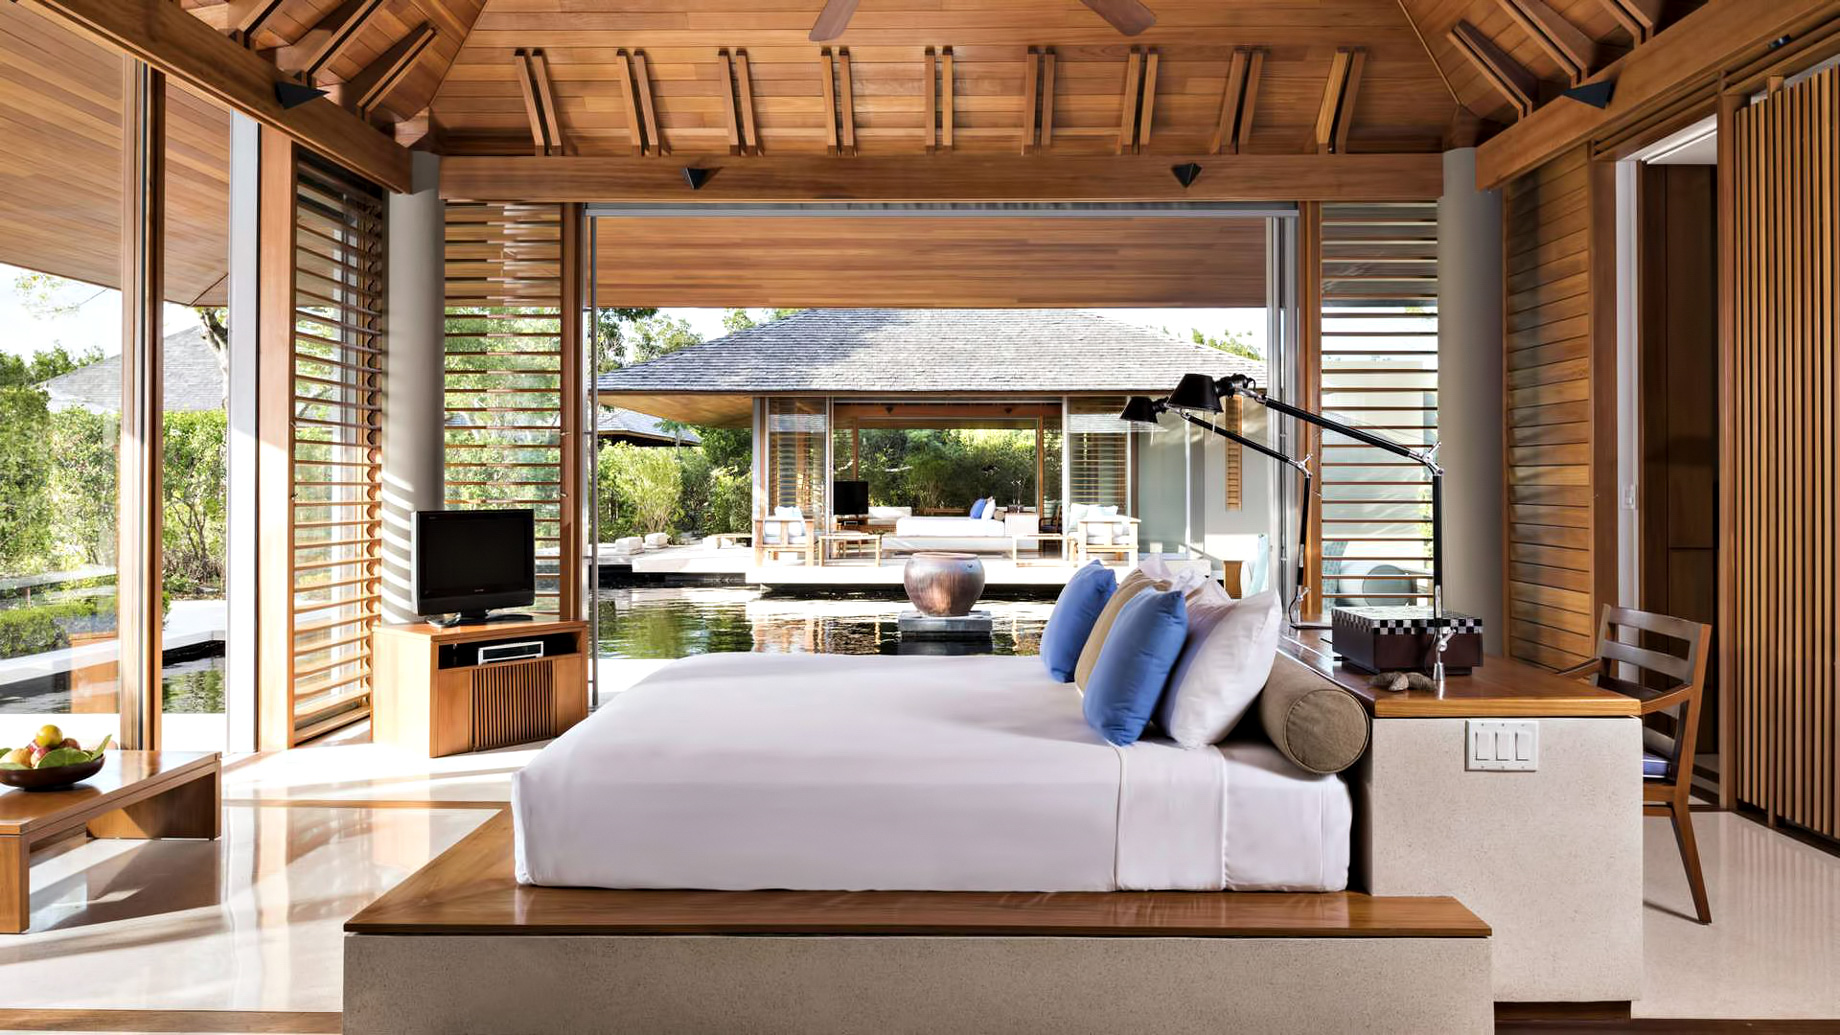 Amanyara Resort – Providenciales, Turks and Caicos Islands – 6 Bedroom Amanyara Villa Bedroom